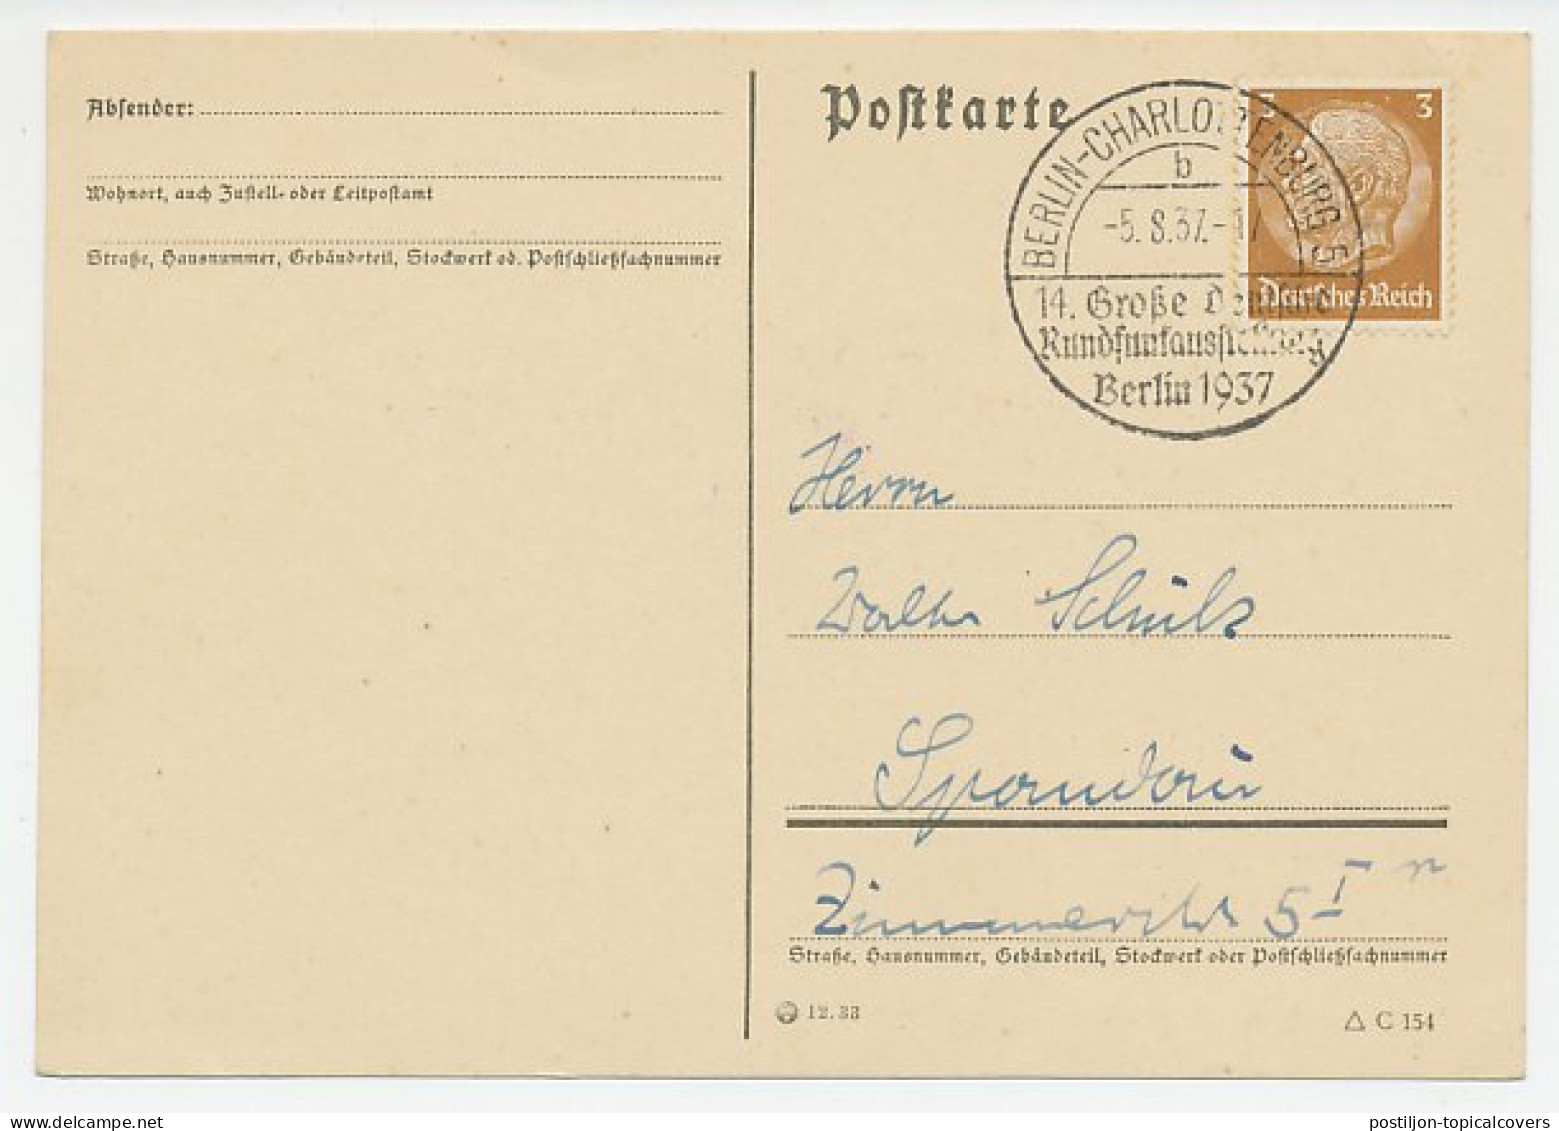 Postcard / Postmark Deutsches Reich / Germany 1937 Broadcasting Exhibition - Radio - Ohne Zuordnung